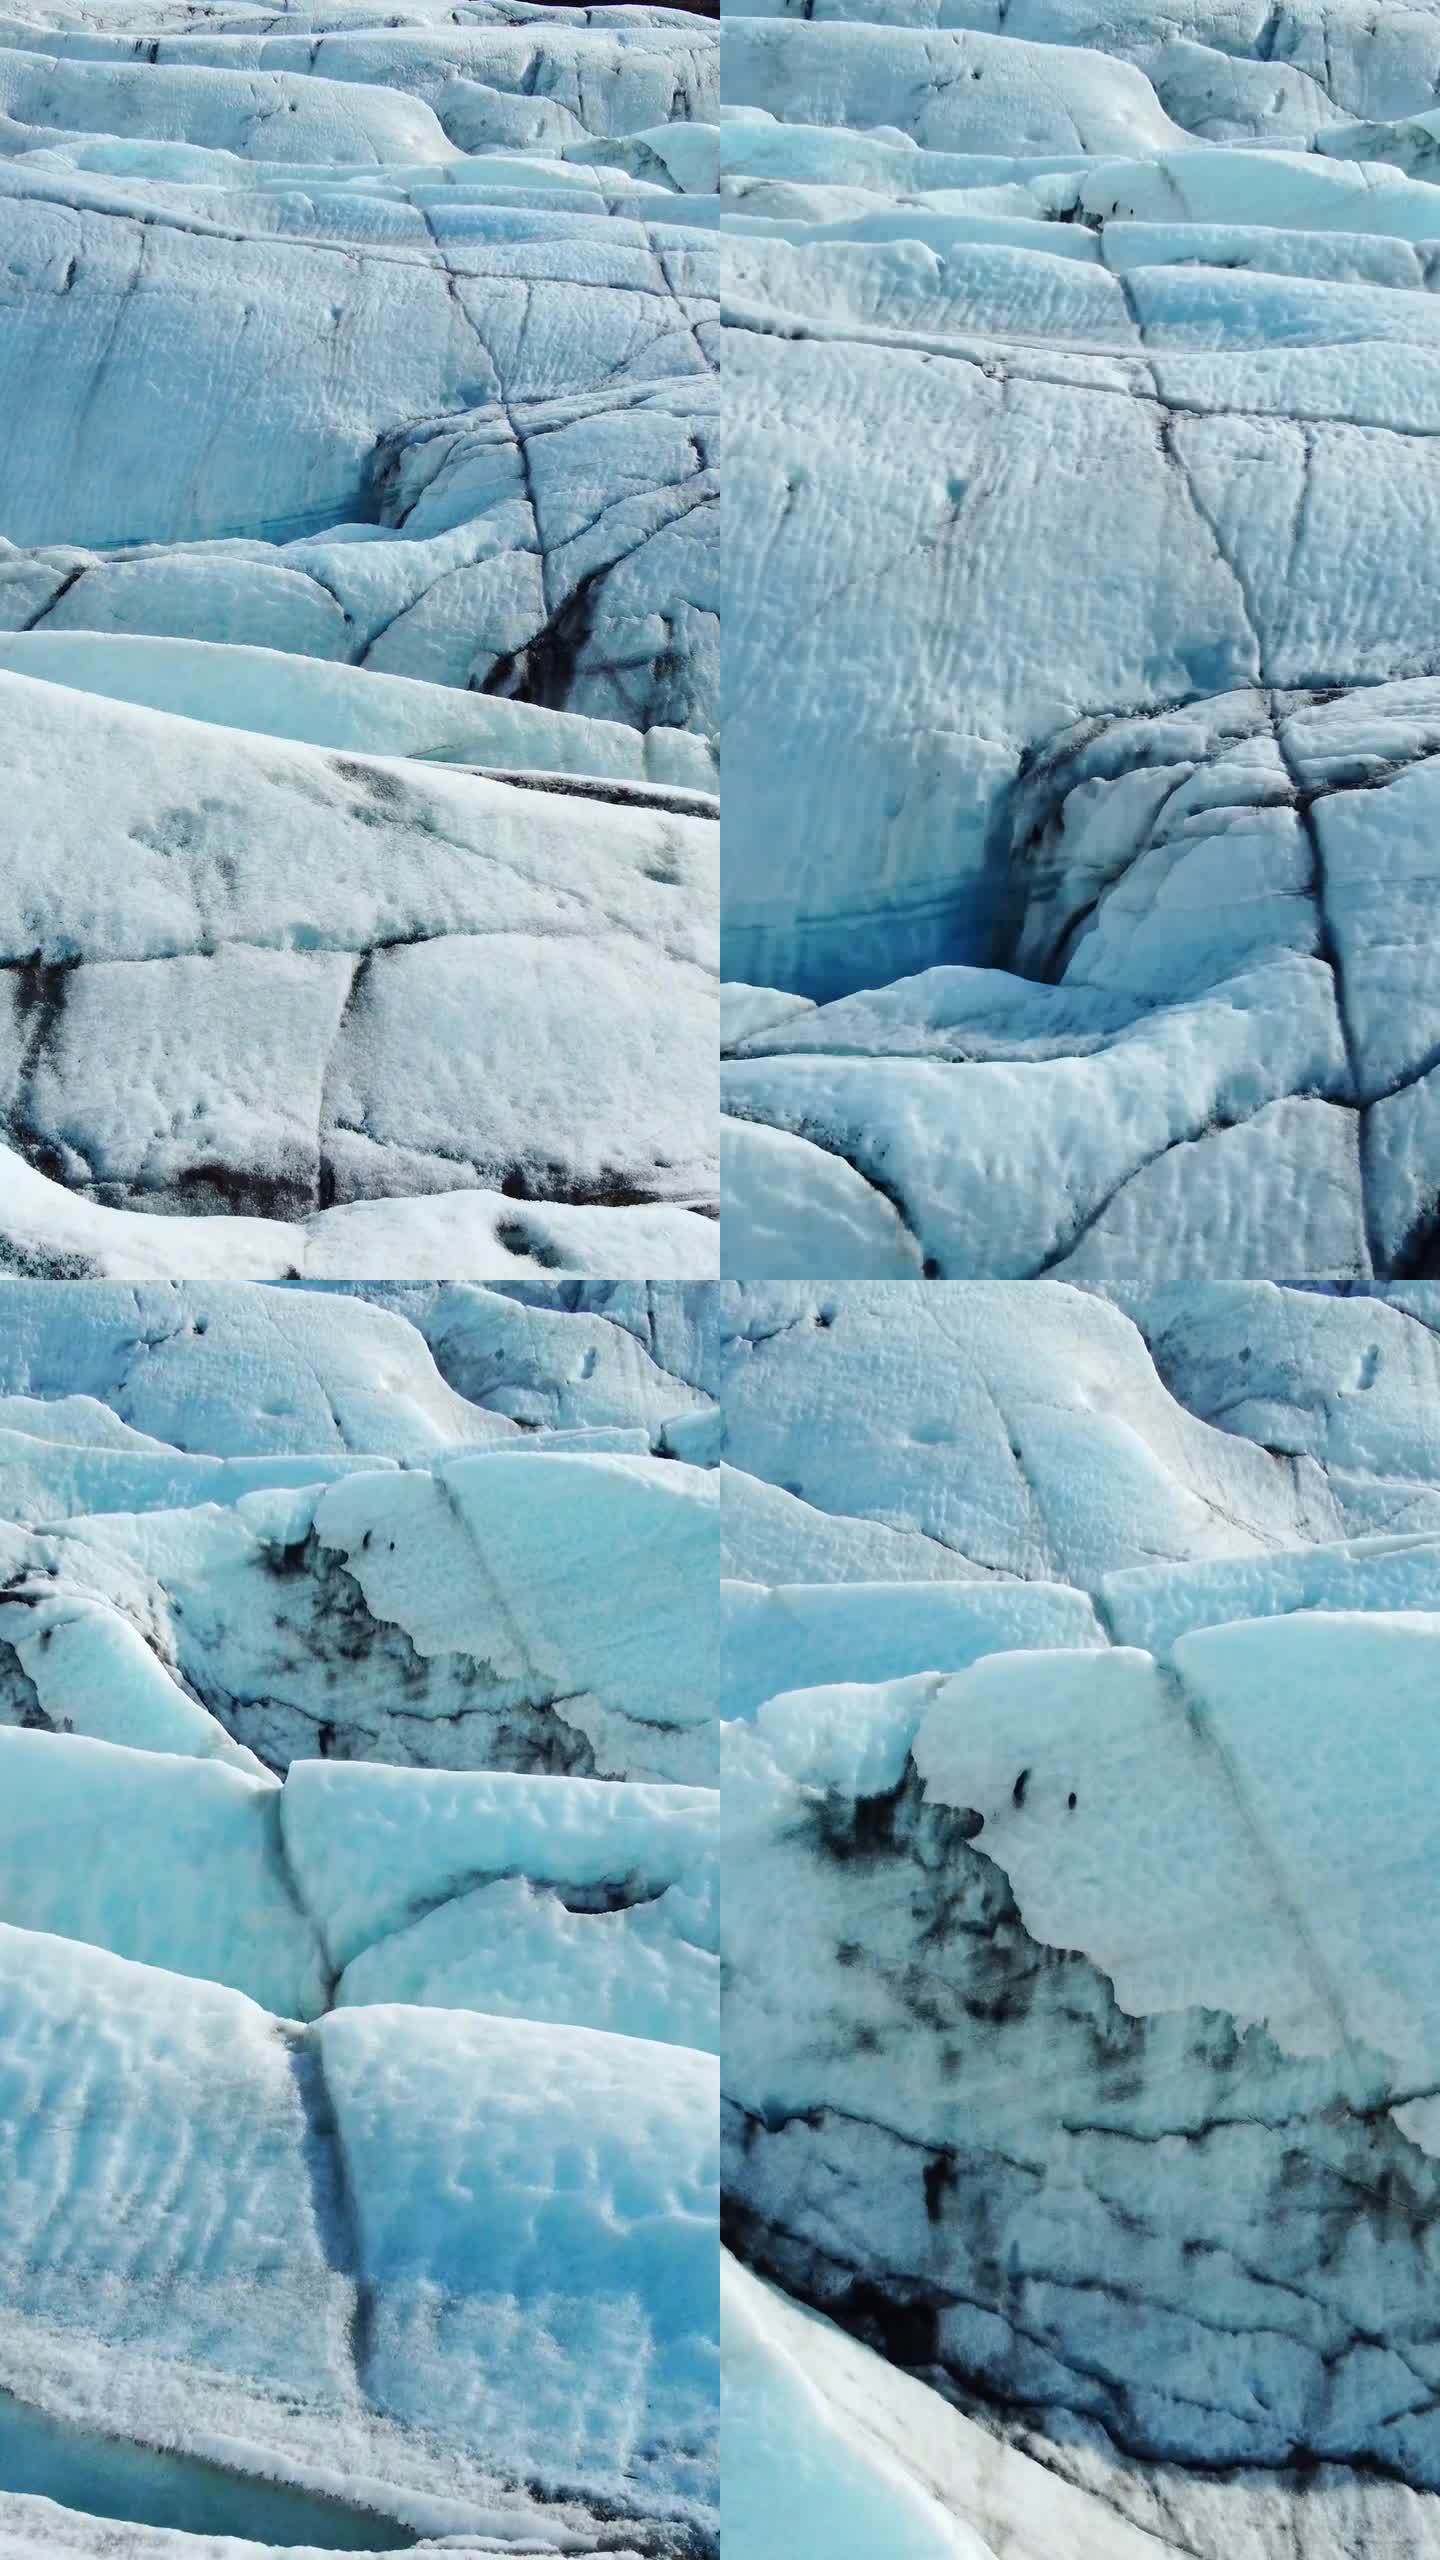 竖屏:冰岛的瓦特纳冰川。纯蓝冰，冬季景观鸟瞰图4k。欧洲最大的冰川。热门旅游景点，冰川融化。拍摄社交